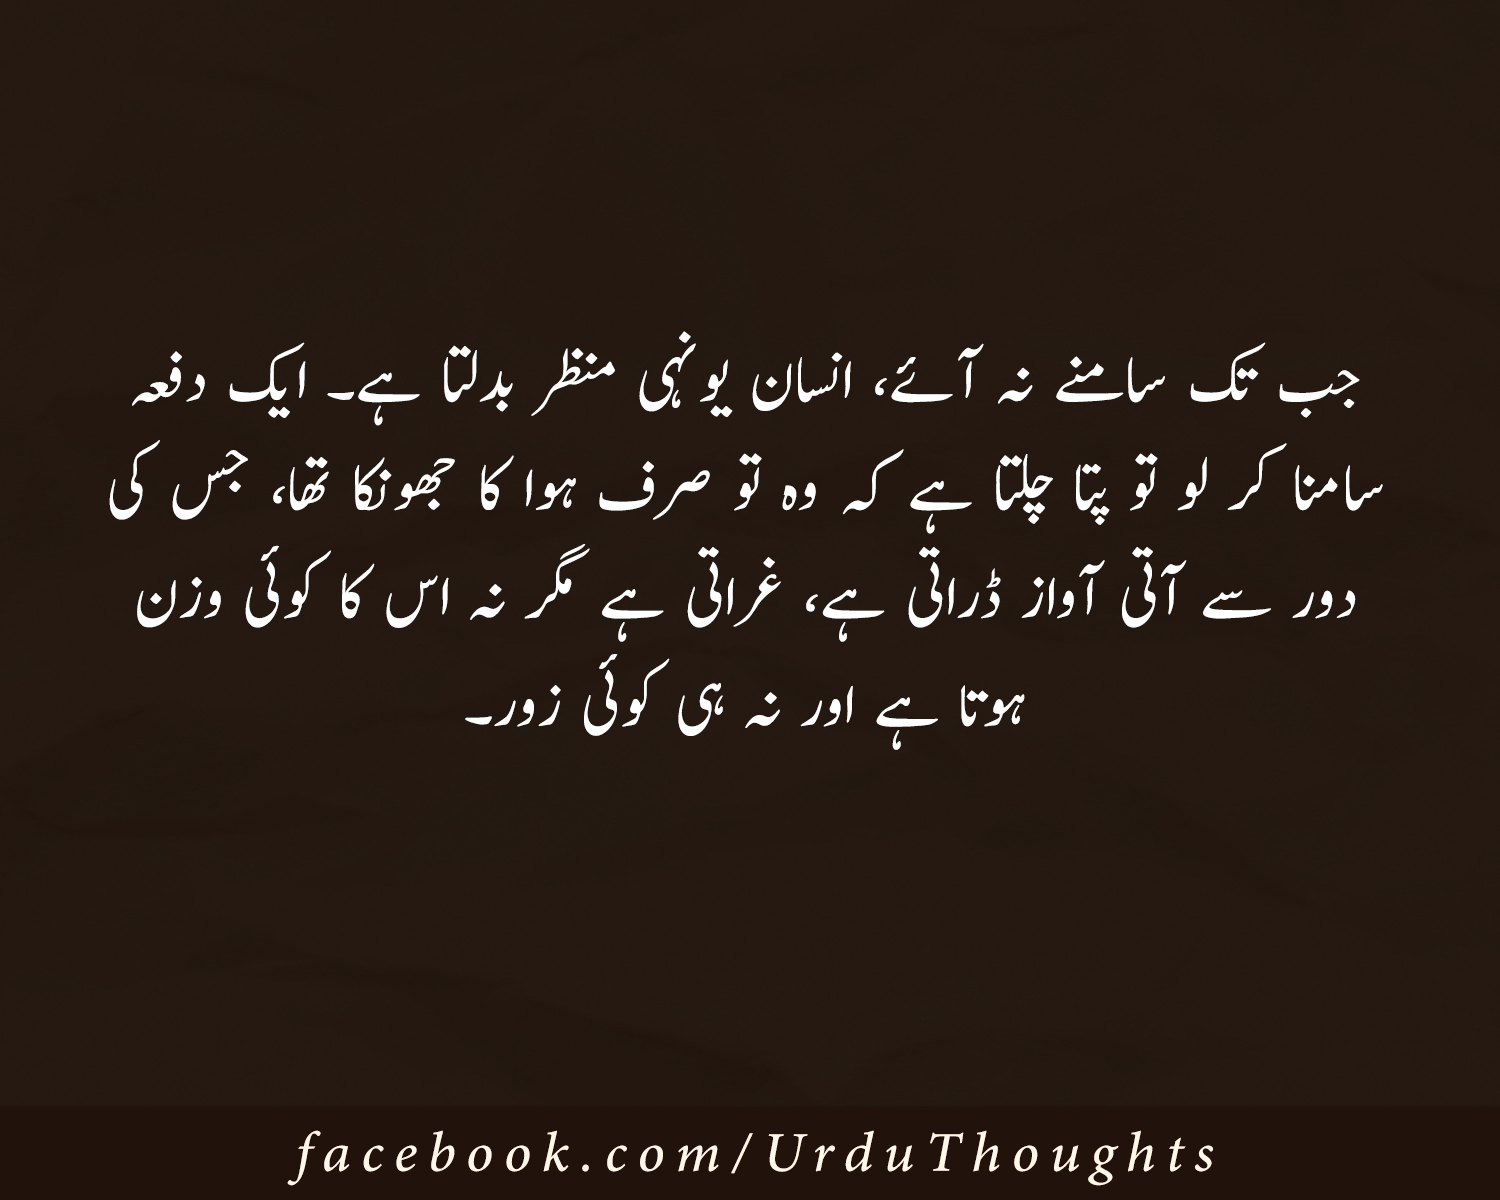 Urdu quotes in Hindi Urdu quotes with images beautiful quotes in urdu on life beautiful quotes in urdu on love inspirational islamic quotes in urdu